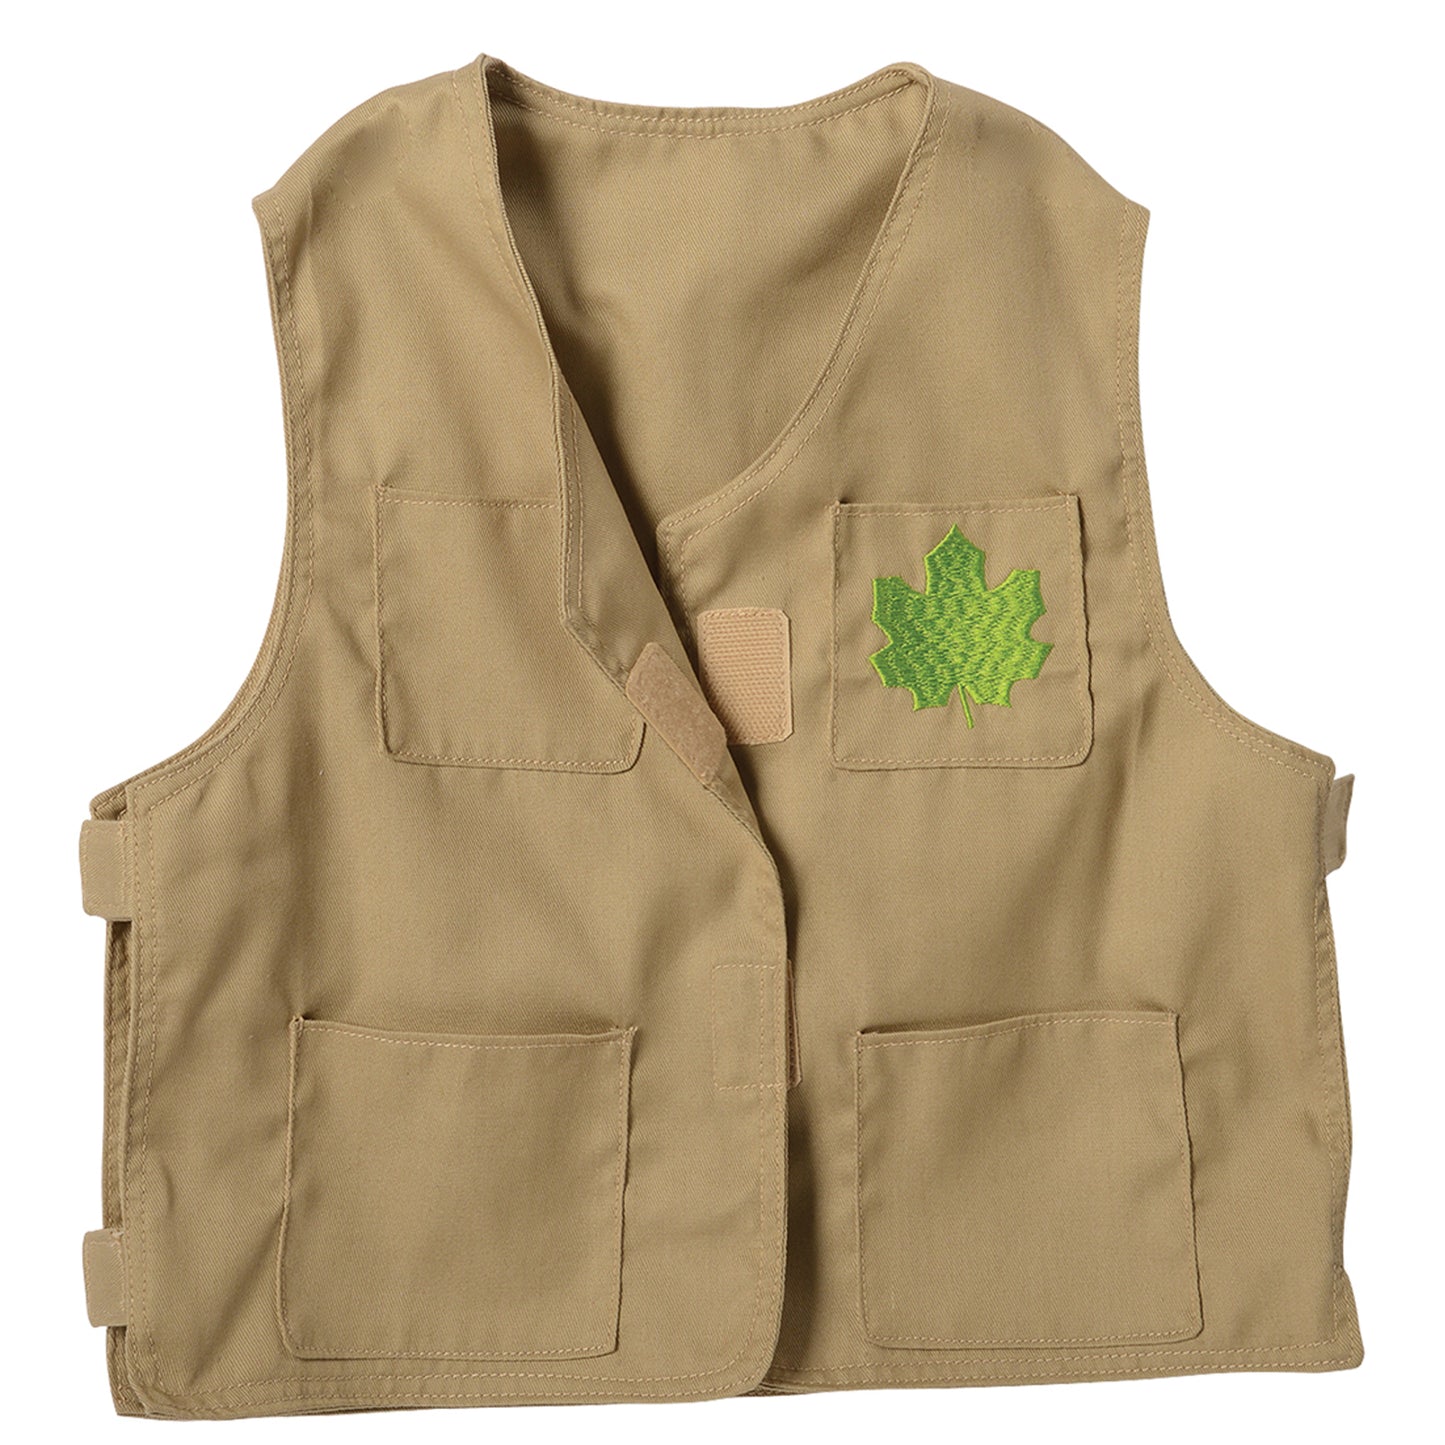 Nature Explorer Toddler Dress-Up, Vest & Hat